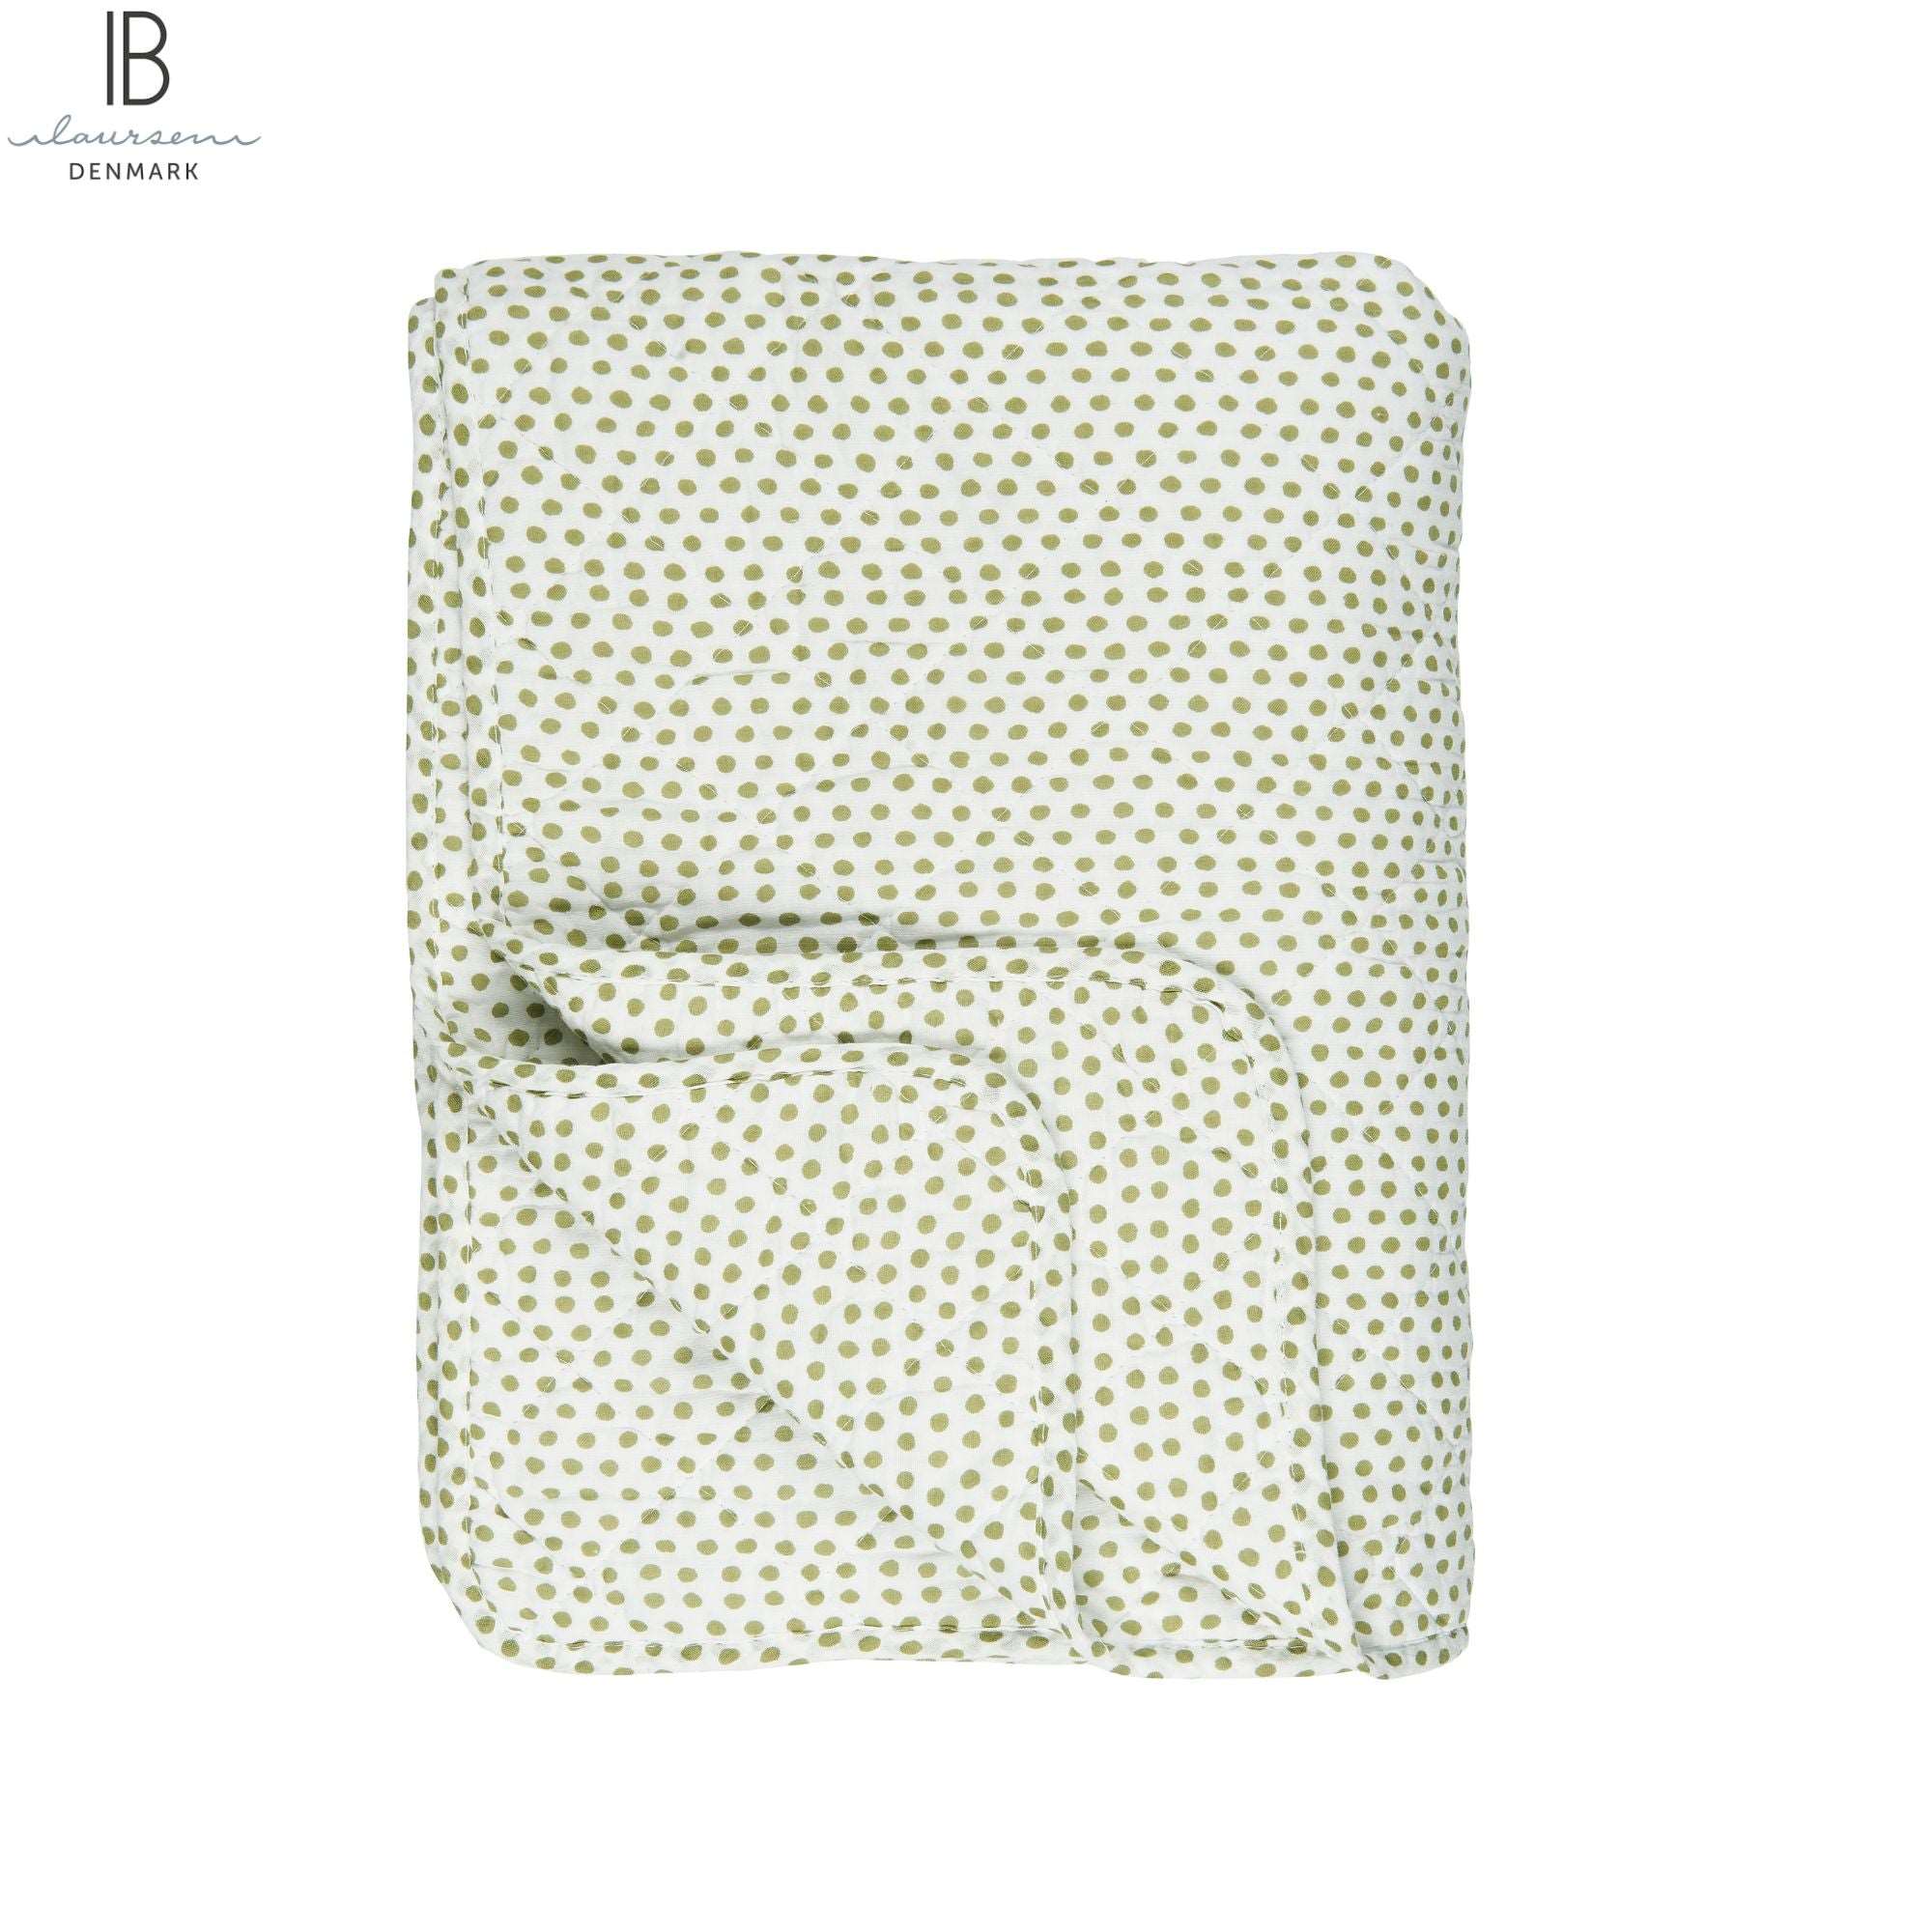 Ib Laursen Decke Quilt mit grünen Punkten